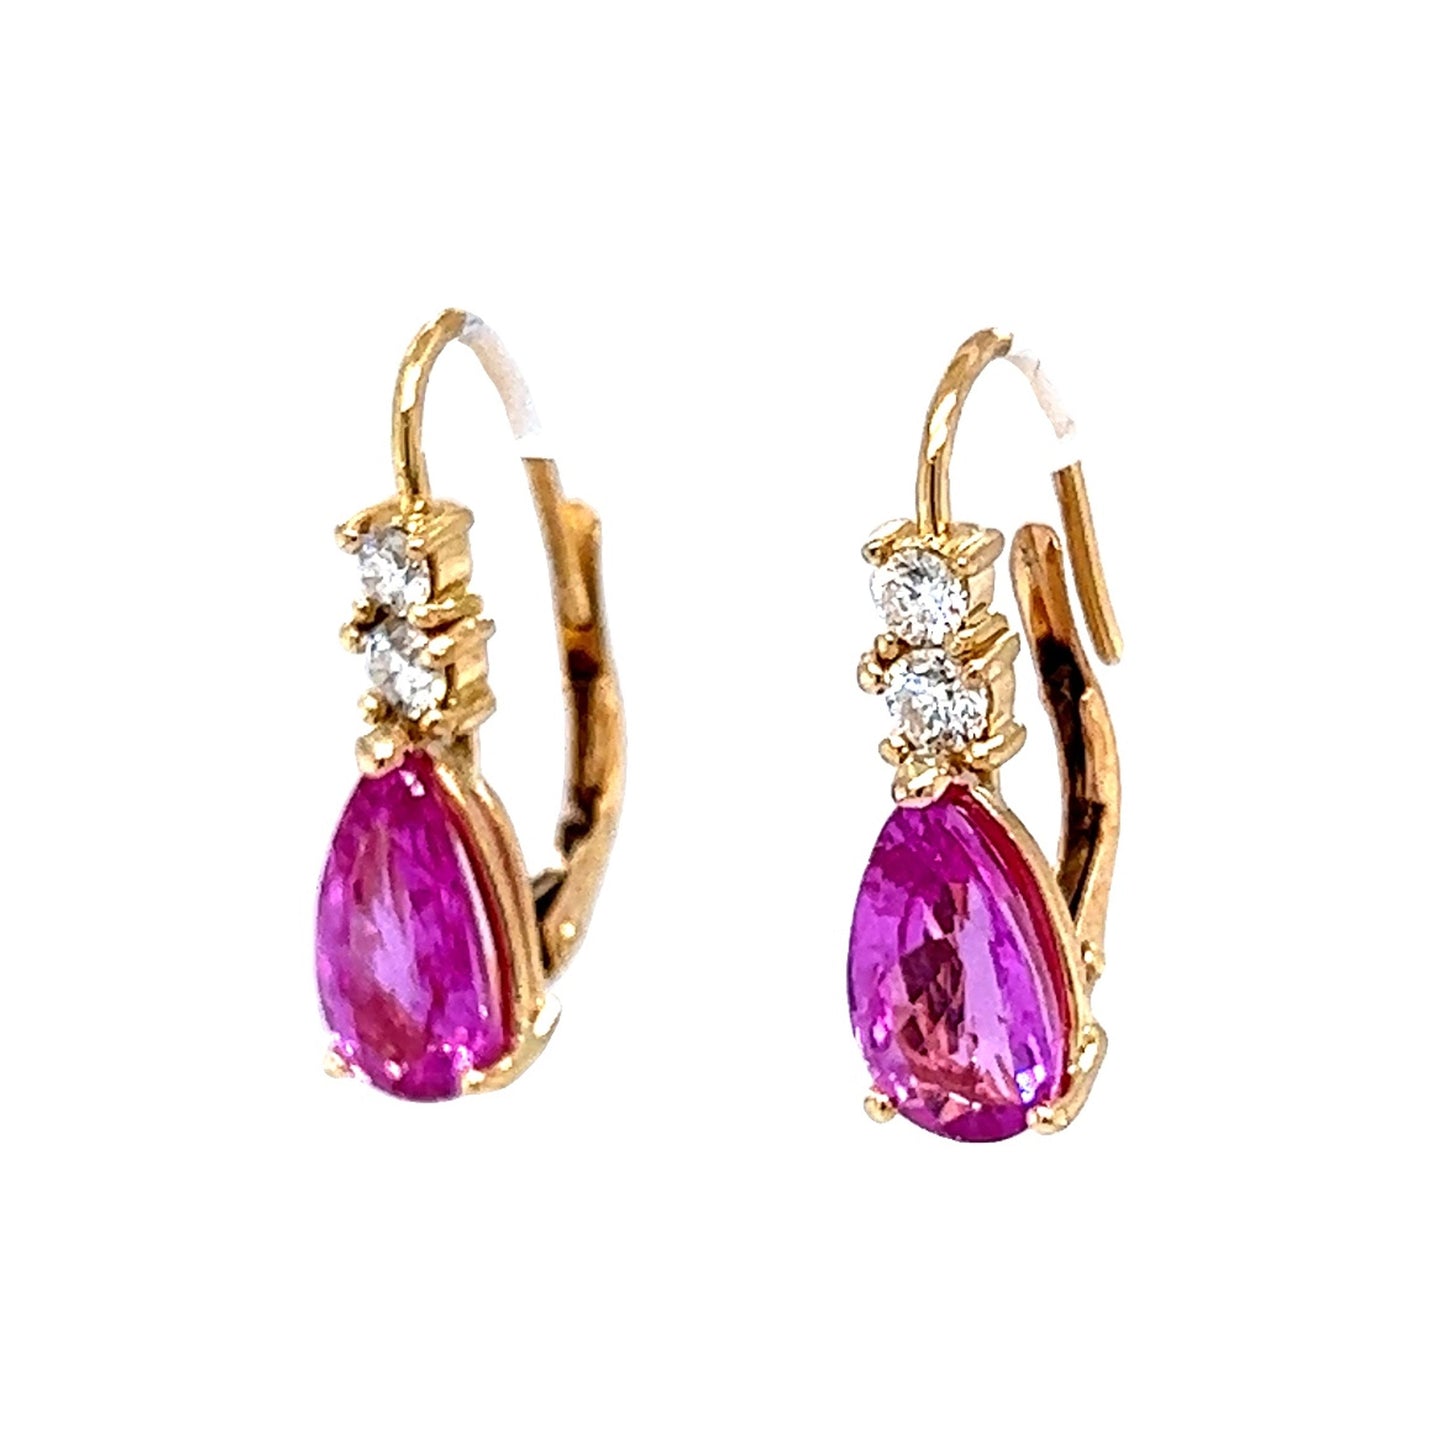 Pink Sapphire & Diamond Drop Earrings in 14k Yellow Gold